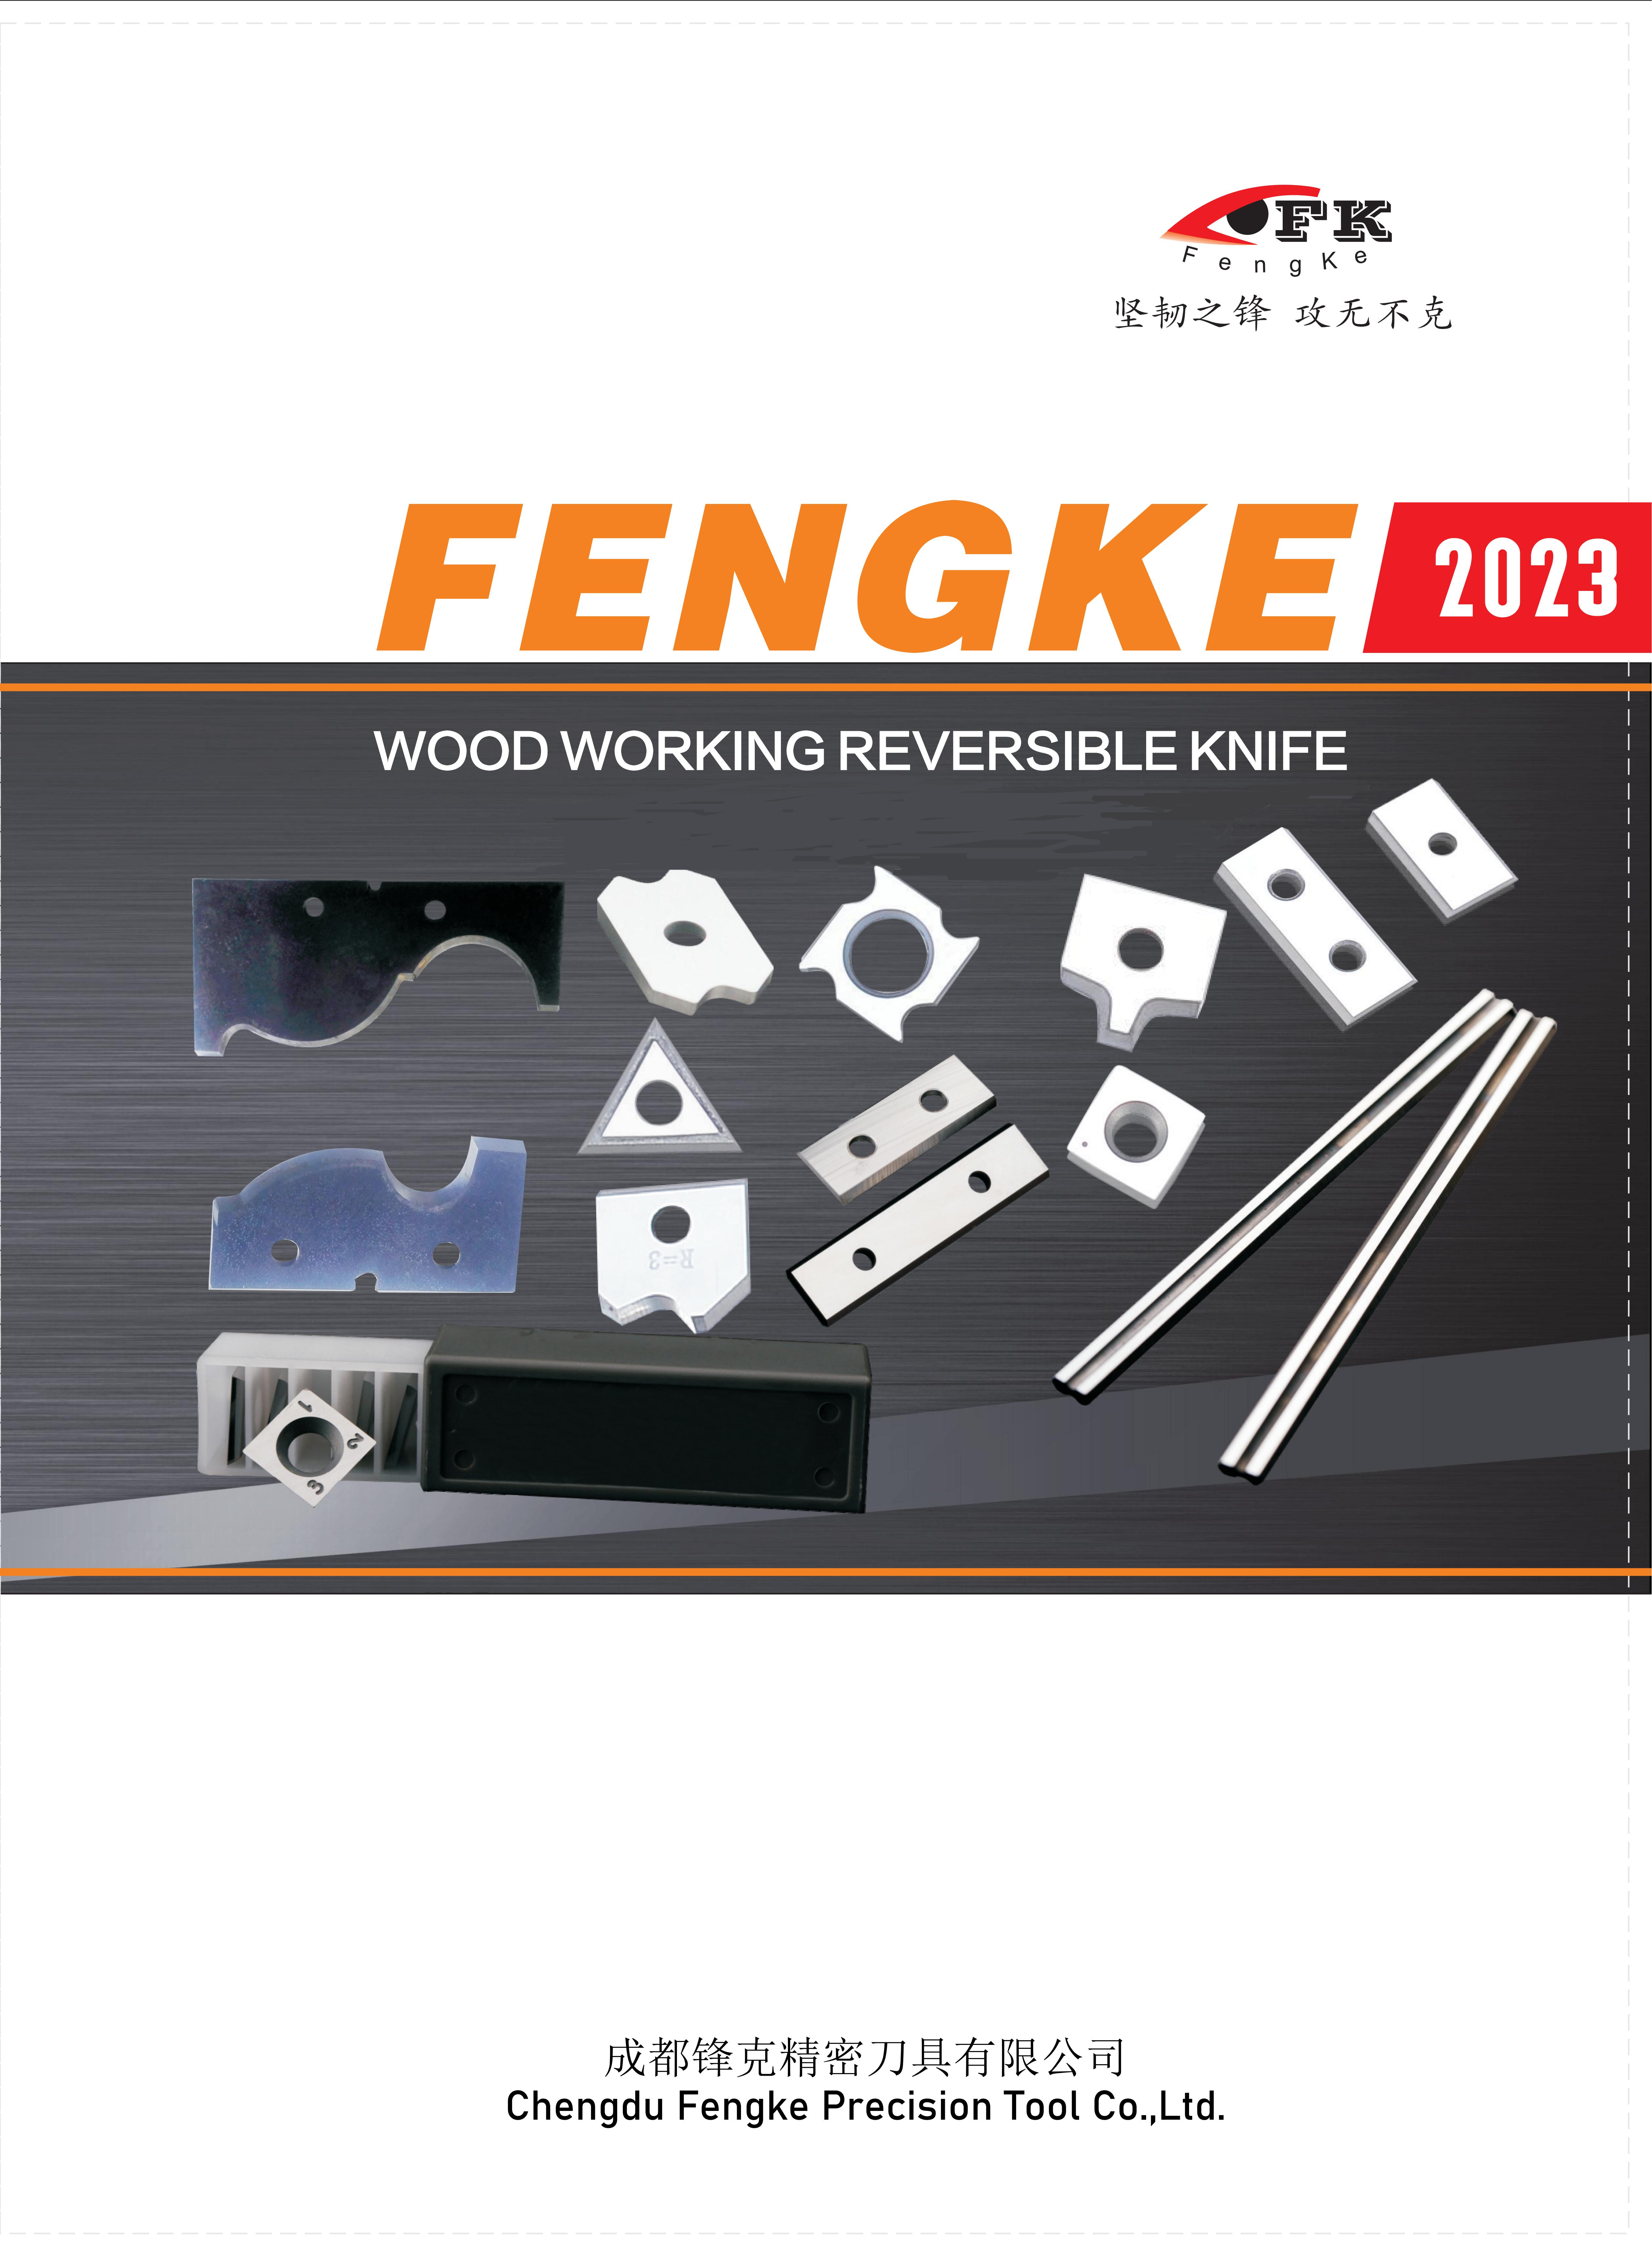 Công cụ Fengke(单页)_00